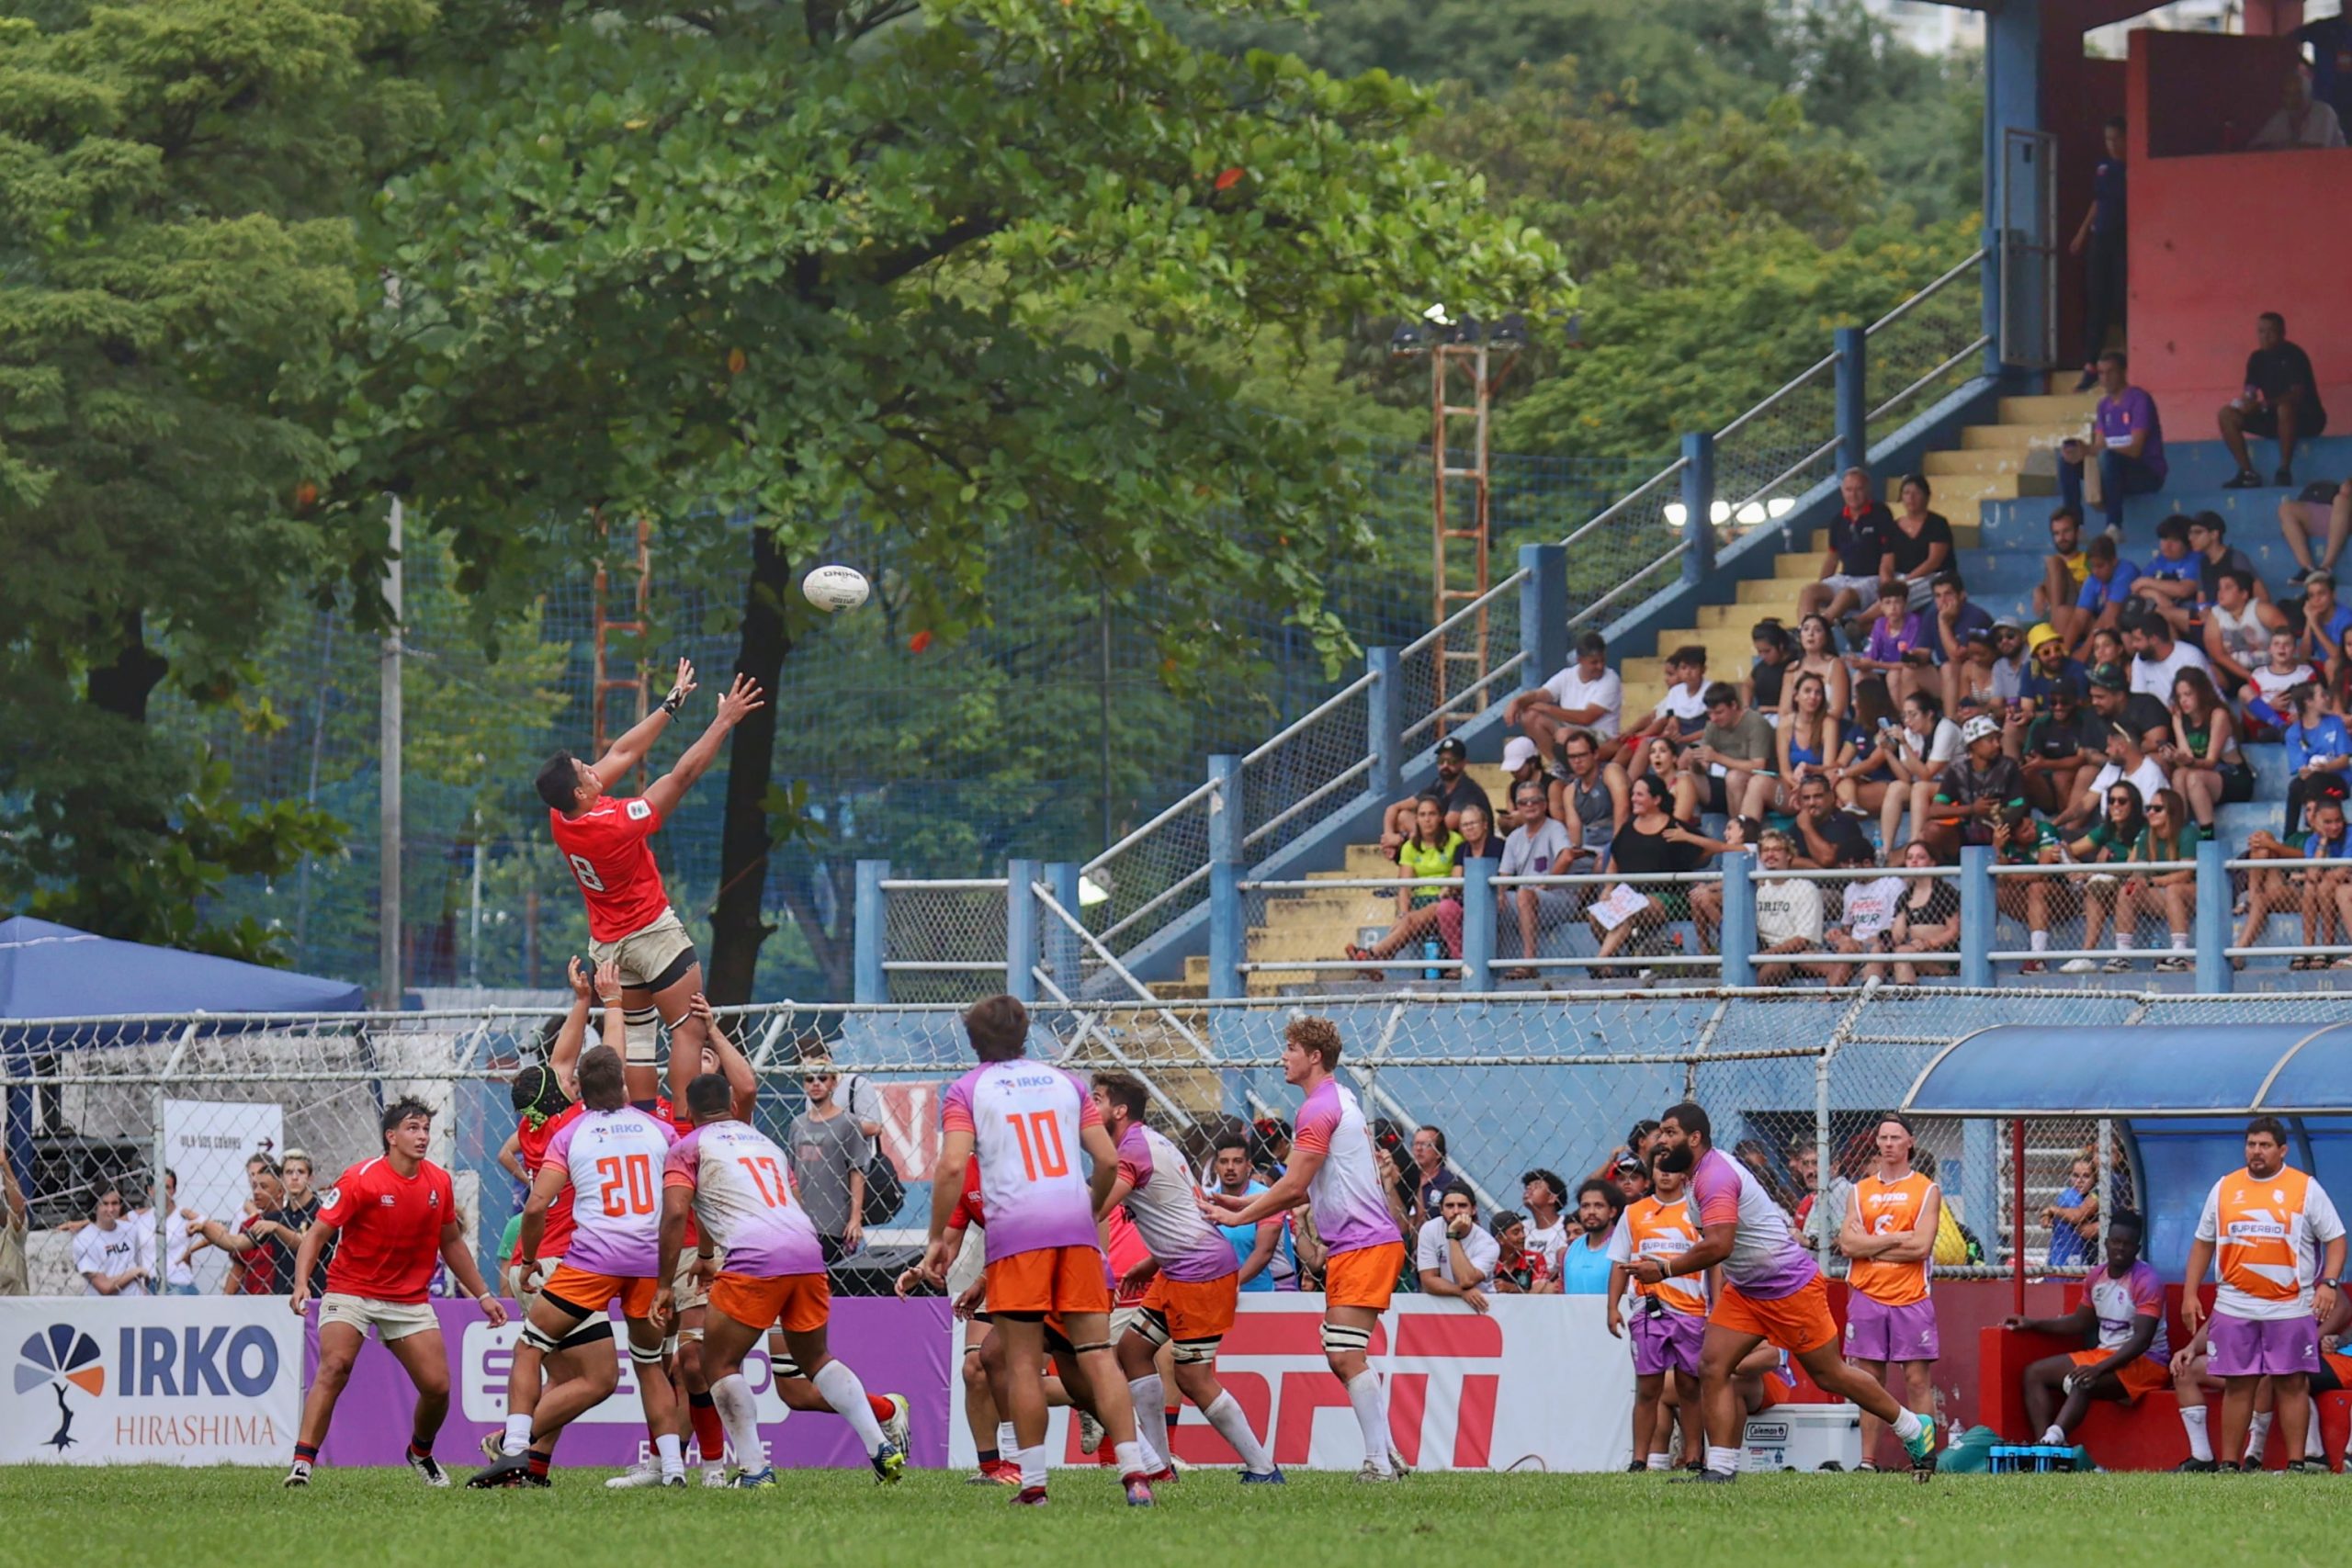 Cobras viveram domingo de grande público para a 2a rodada do Super Rugby Américas